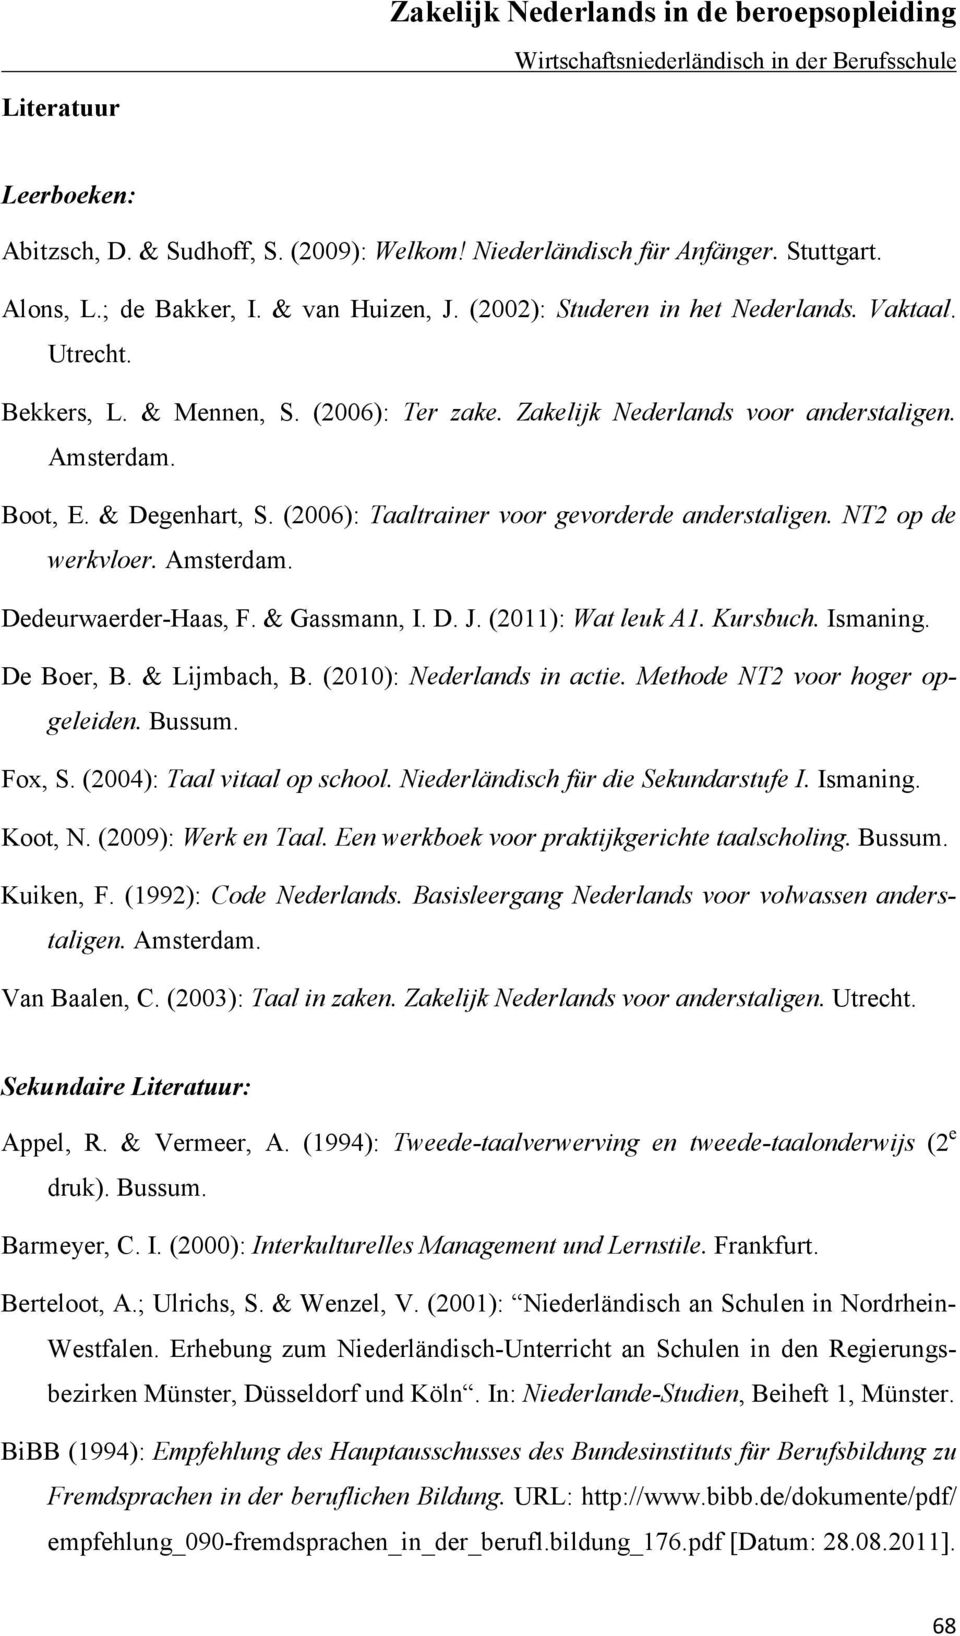 Amsterdam. Dedeurwaerder-Haas, F. & Gassmann, I. D. J. (2011): Wat leuk A1. Kursbuch. Ismaning. De Boer, B. & Lijmbach, B. (2010): Nederlands in actie. Methode NT2 voor hoger opgeleiden. Bussum.